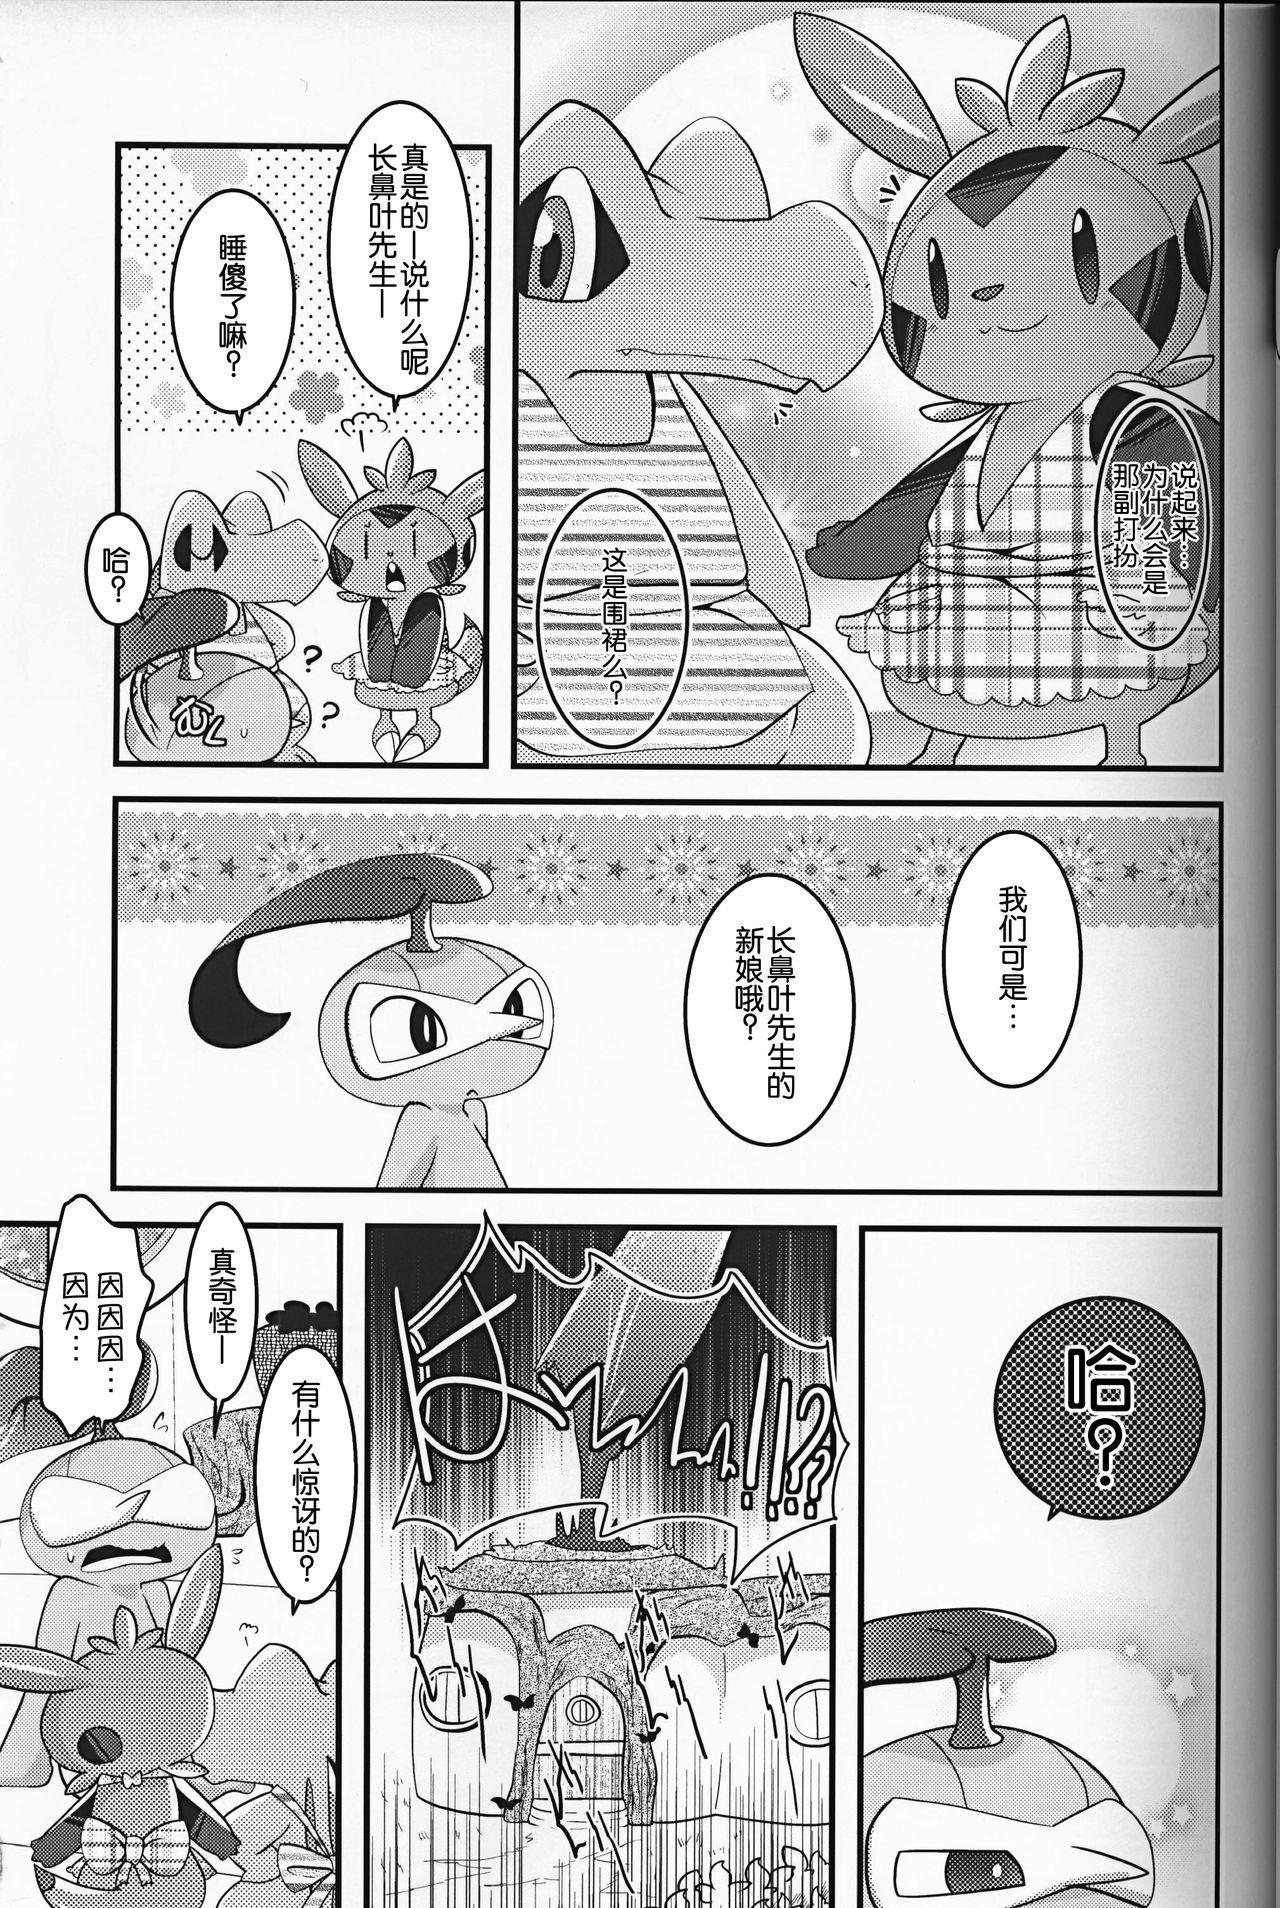 Desnuda Dreamy Smoke - Pokemon Magrinha - Page 9